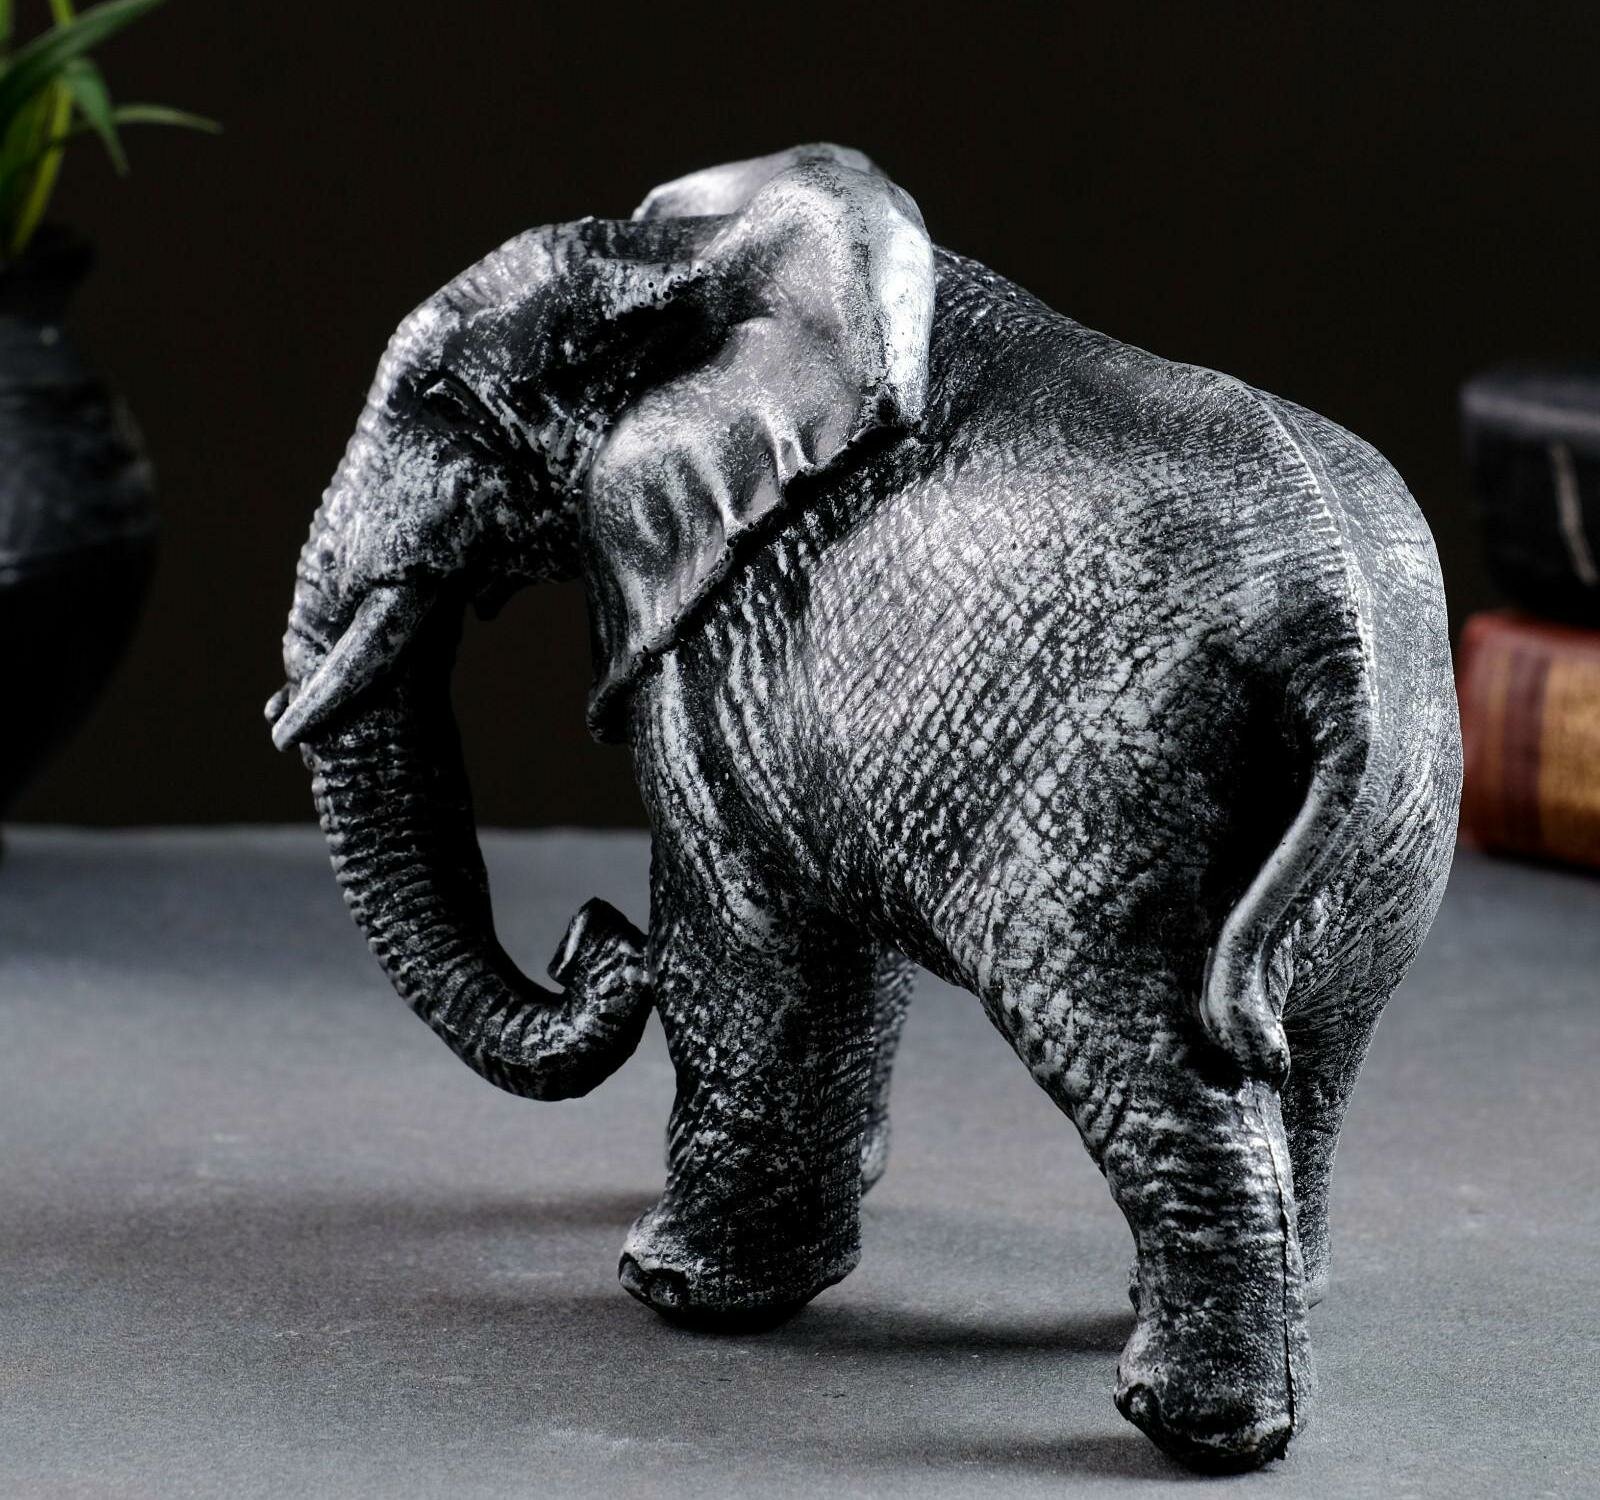 Фигура декоративная Слон африканский цв. серебро, 17,5*9*13см KSMR-713108/SG028